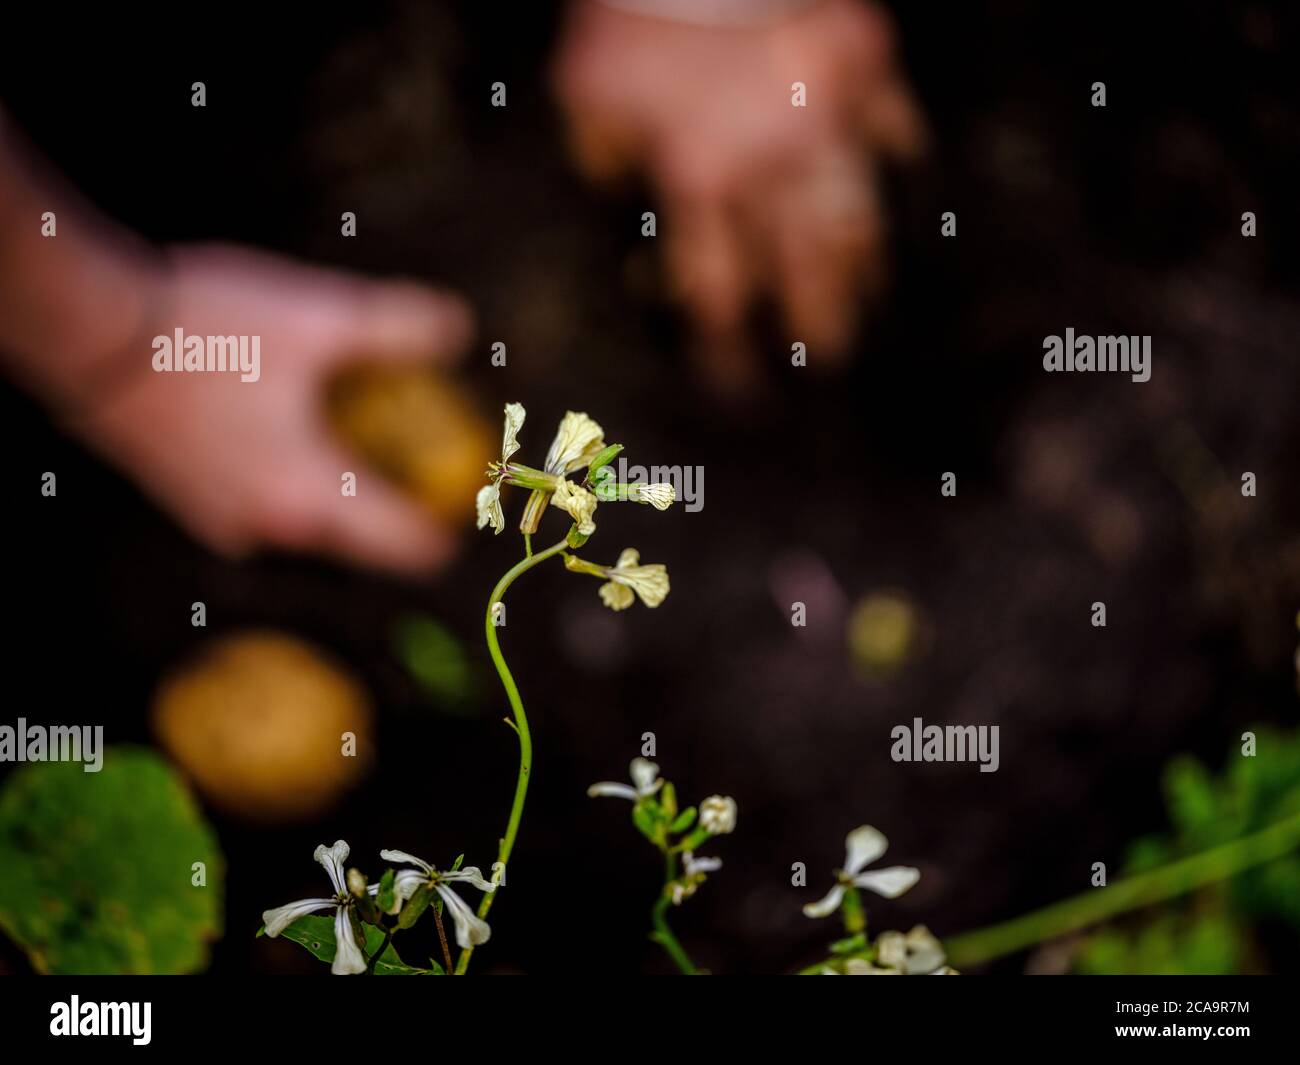 Nahaufnahme der verschwommenen Hände einer Frau beim Ernten von hausgemachten Kartoffeln im Bild Mit einer Korianderblume im Vordergrund Stockfoto